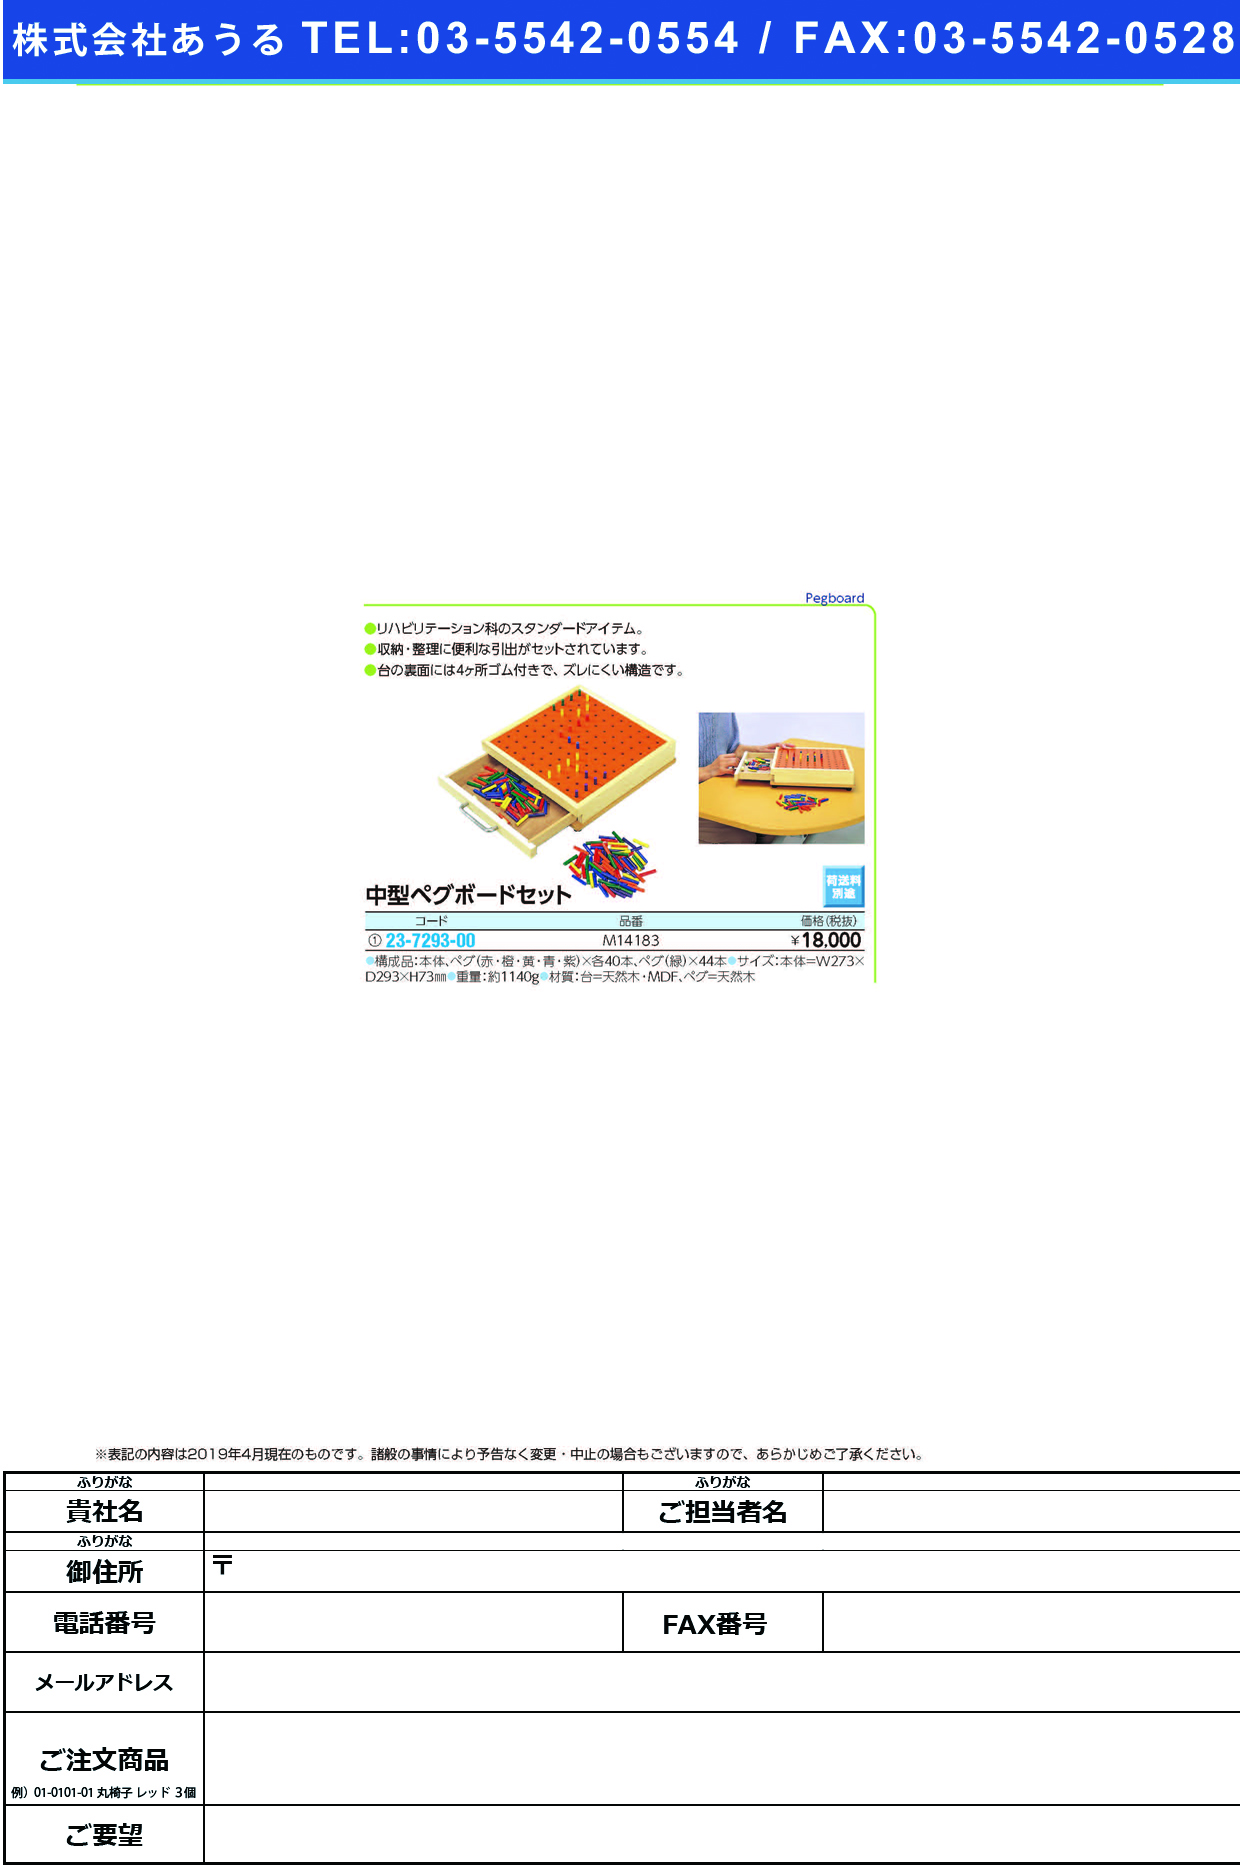 (23-7293-00)中型ペグボードセット 240 ﾁｭｳｶﾞﾀﾍﾟｸﾞﾎﾞｰﾄﾞｾｯﾄ【1個単位】【2019年カタログ商品】